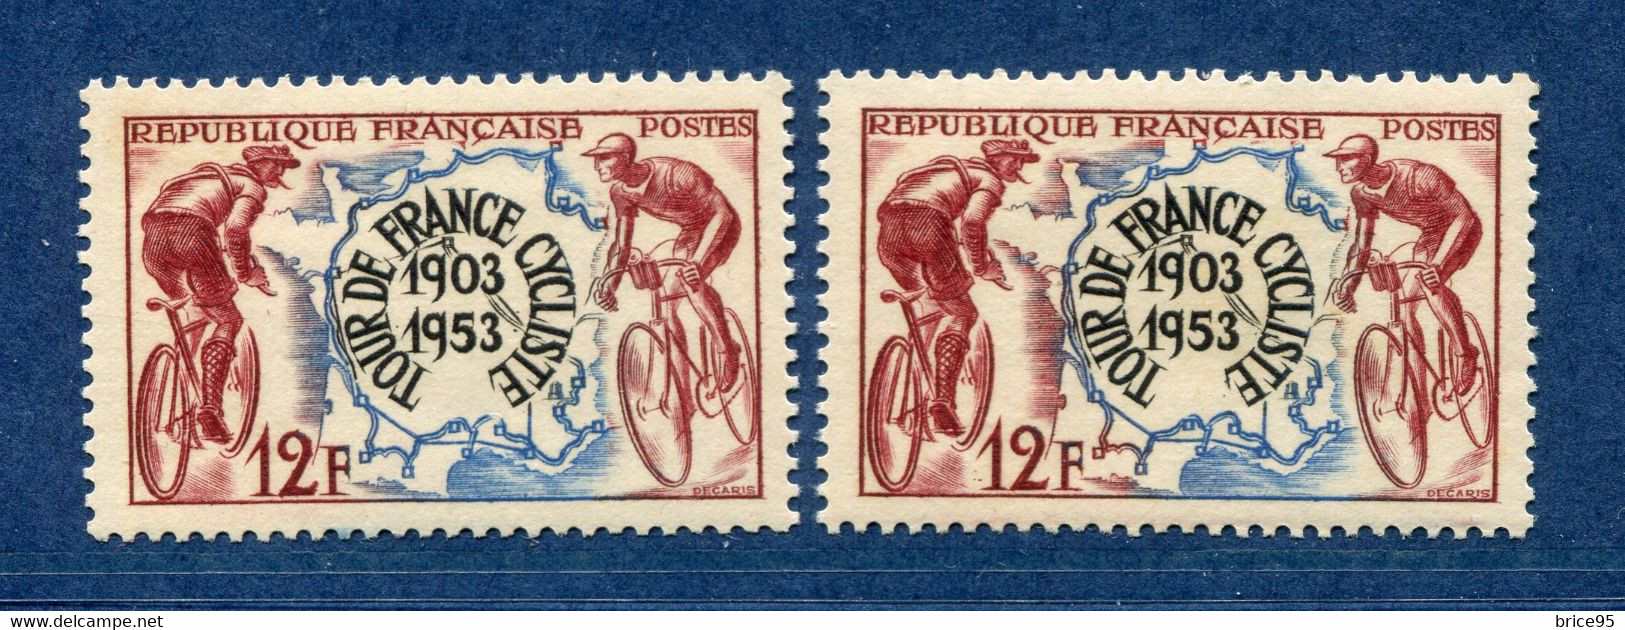 ⭐ France - Variété - YT N° 955 - Couleurs - Pétouille - Neuf Sans Charnière - 1953 ⭐ - Unused Stamps